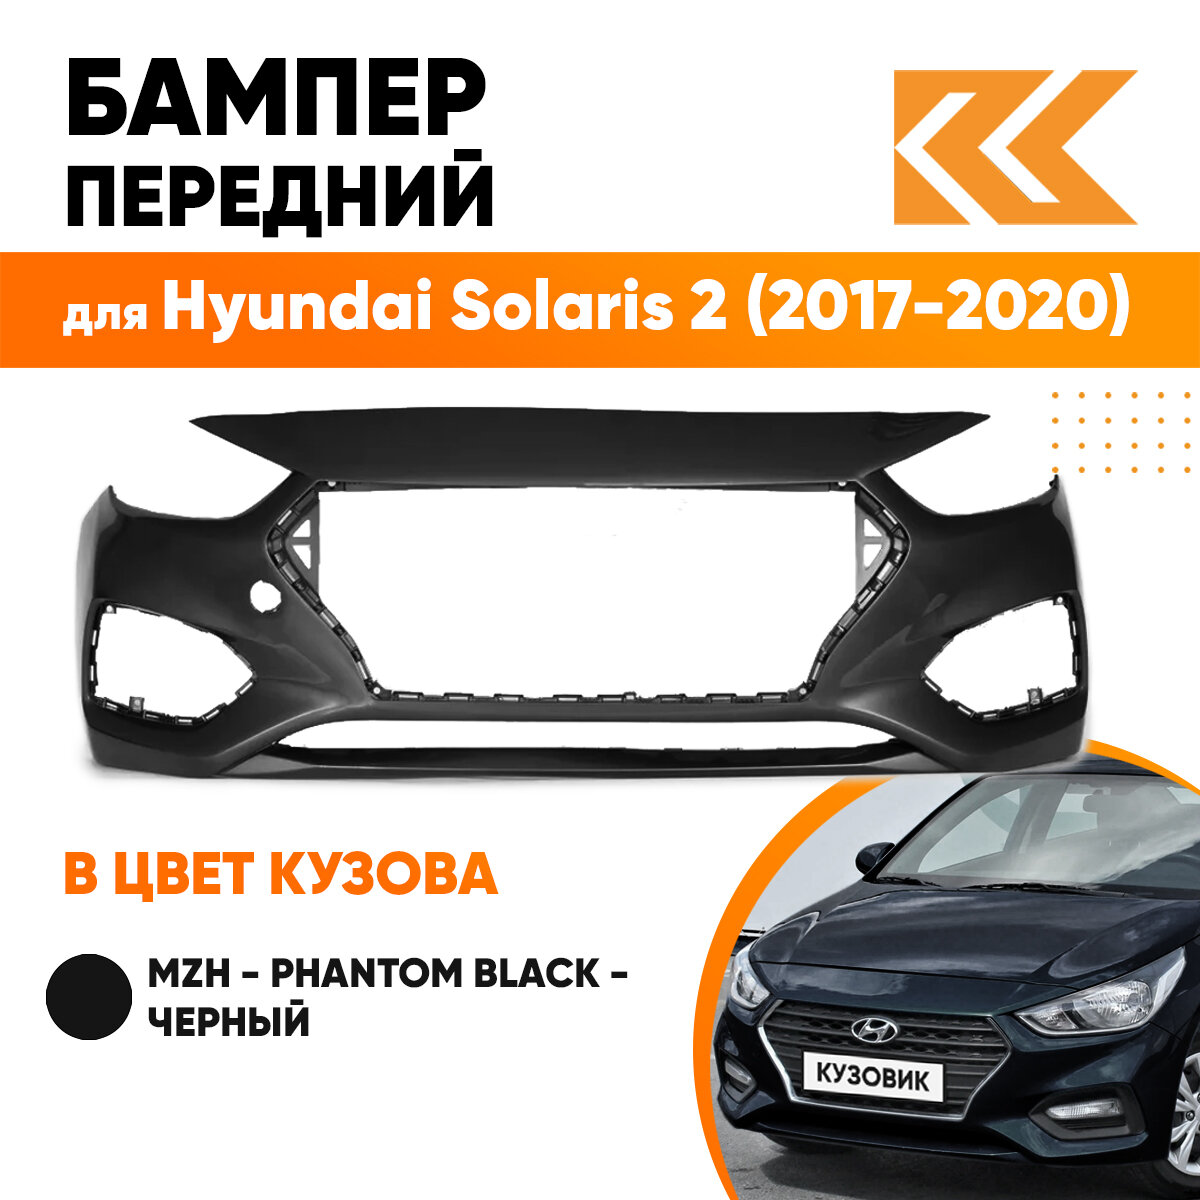 Бампер передний в цвет кузова для Хендай Солярис Hyundai Solaris 2 (2017-2020) MZH -Phantom Black-Черный